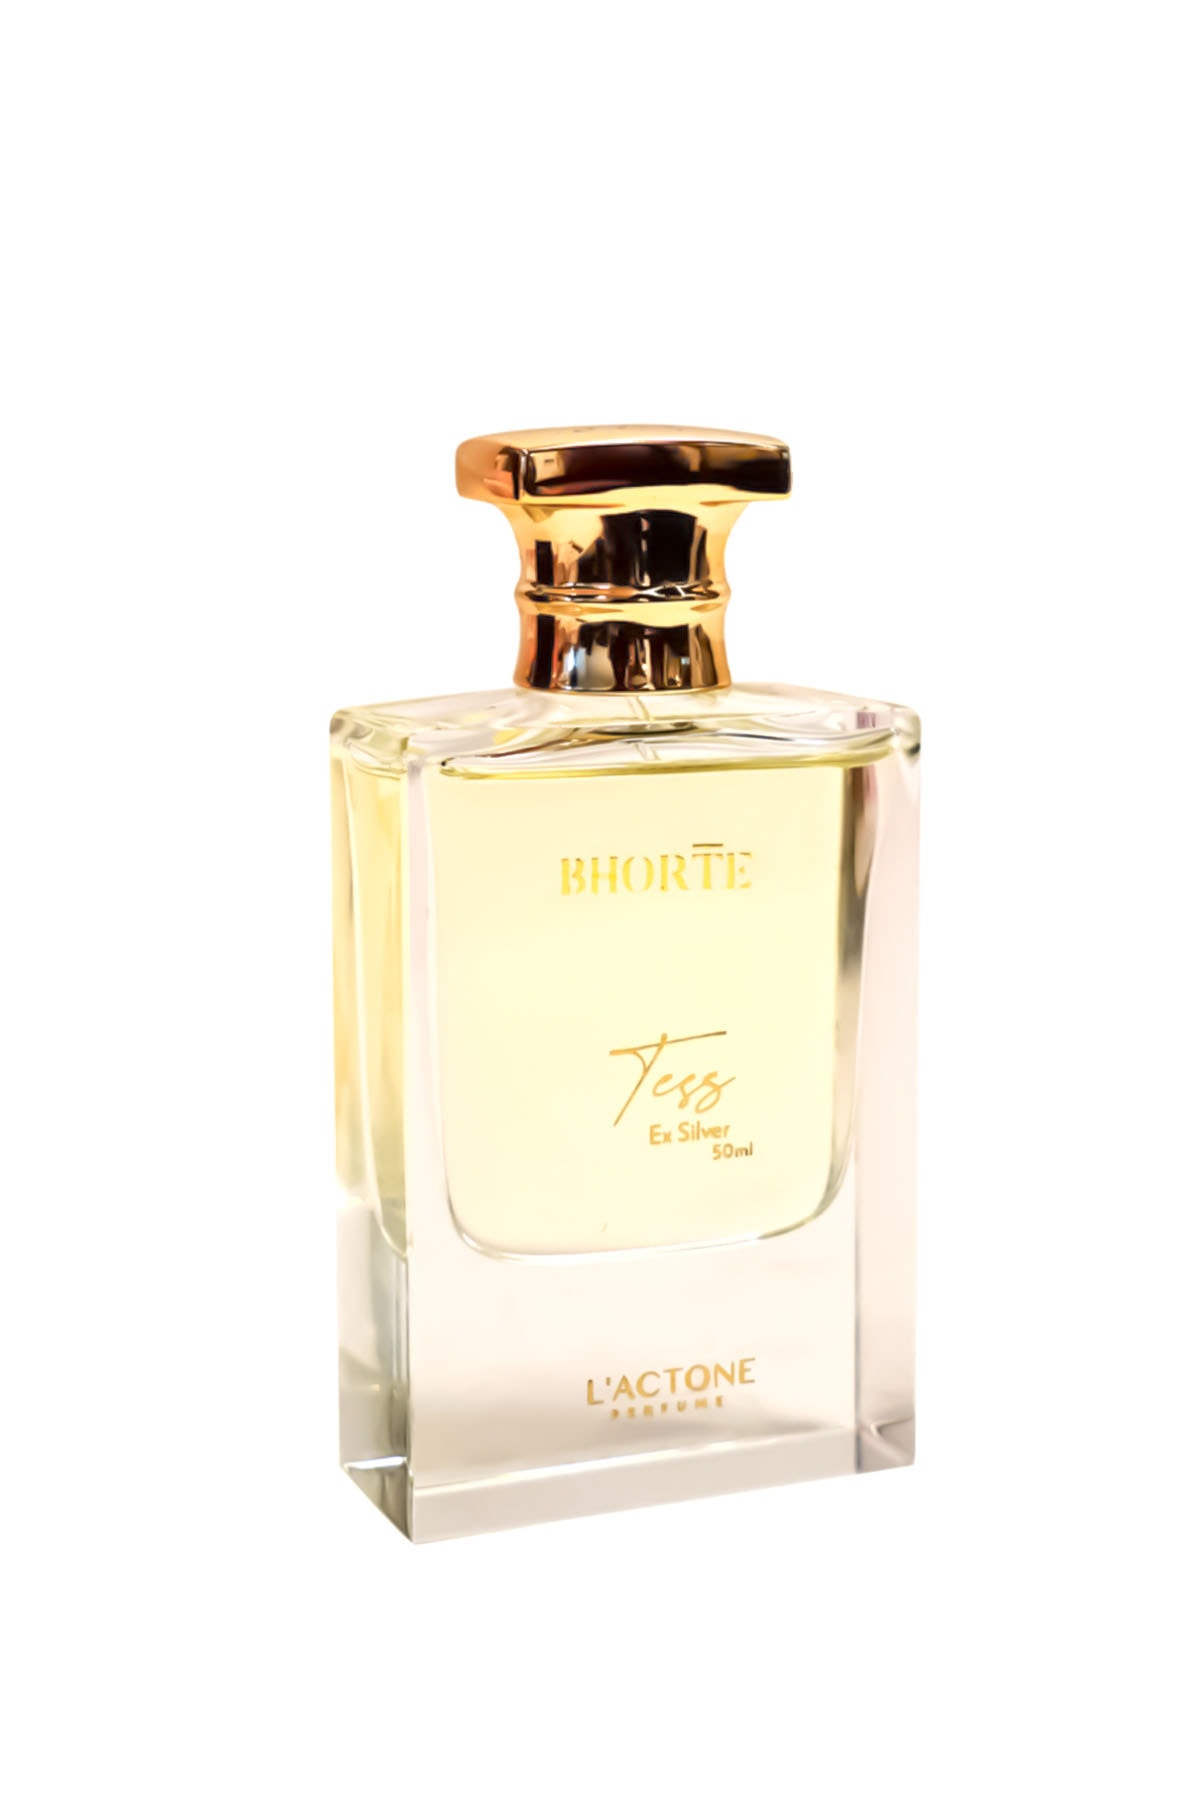 L'ACTONE Wete Erkek Bhorte Tess Parfüm 50 ml